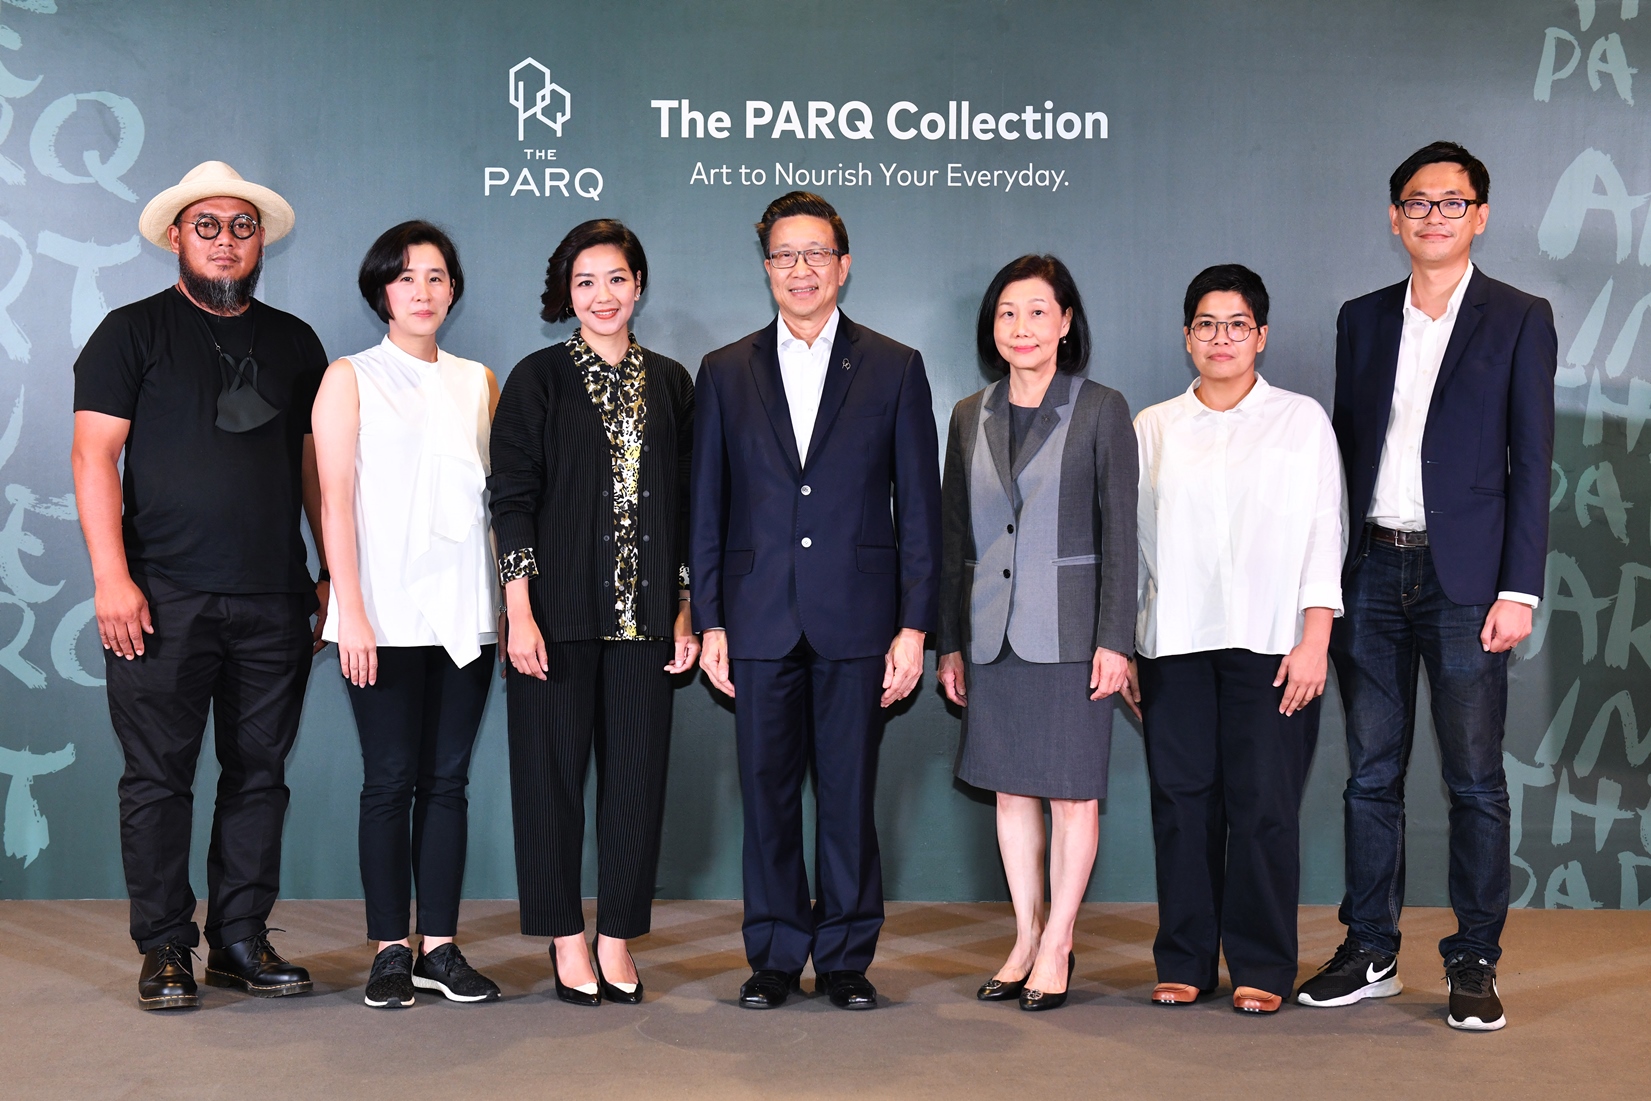 โครงการเดอะ ปาร์ค เปิดตัว “เดอะ ปาร์ค คอลเลคชั่น” (The PARQ Collection)